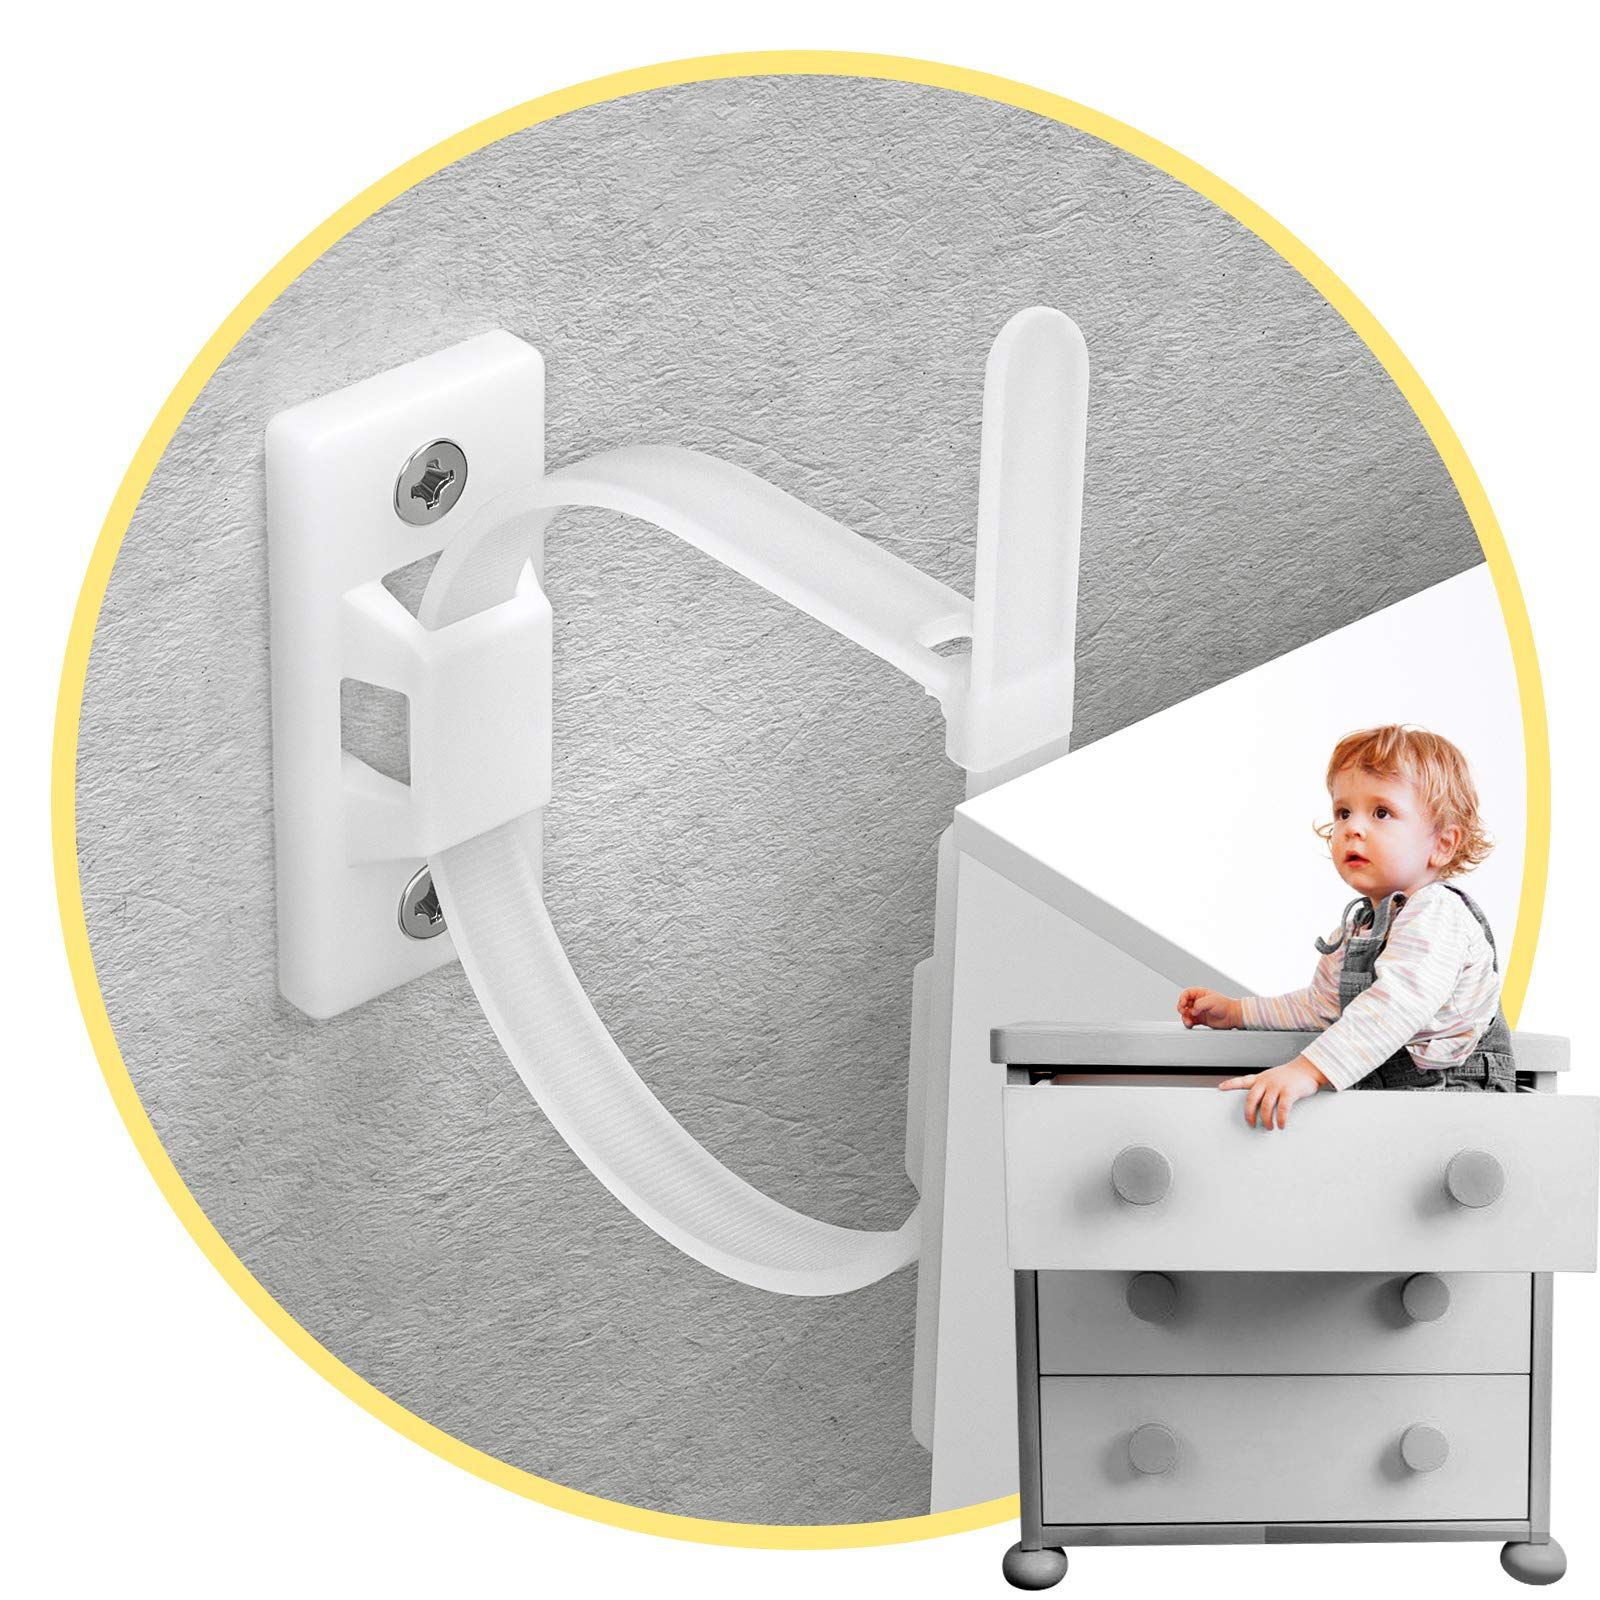 Ребенок защищать Анти -тип мебель якорь комплект Предотвращать с застежкой шкаф Предотвращать с одеждой шкаф мебель Анти -точное устройство шкаф Настенный якорь